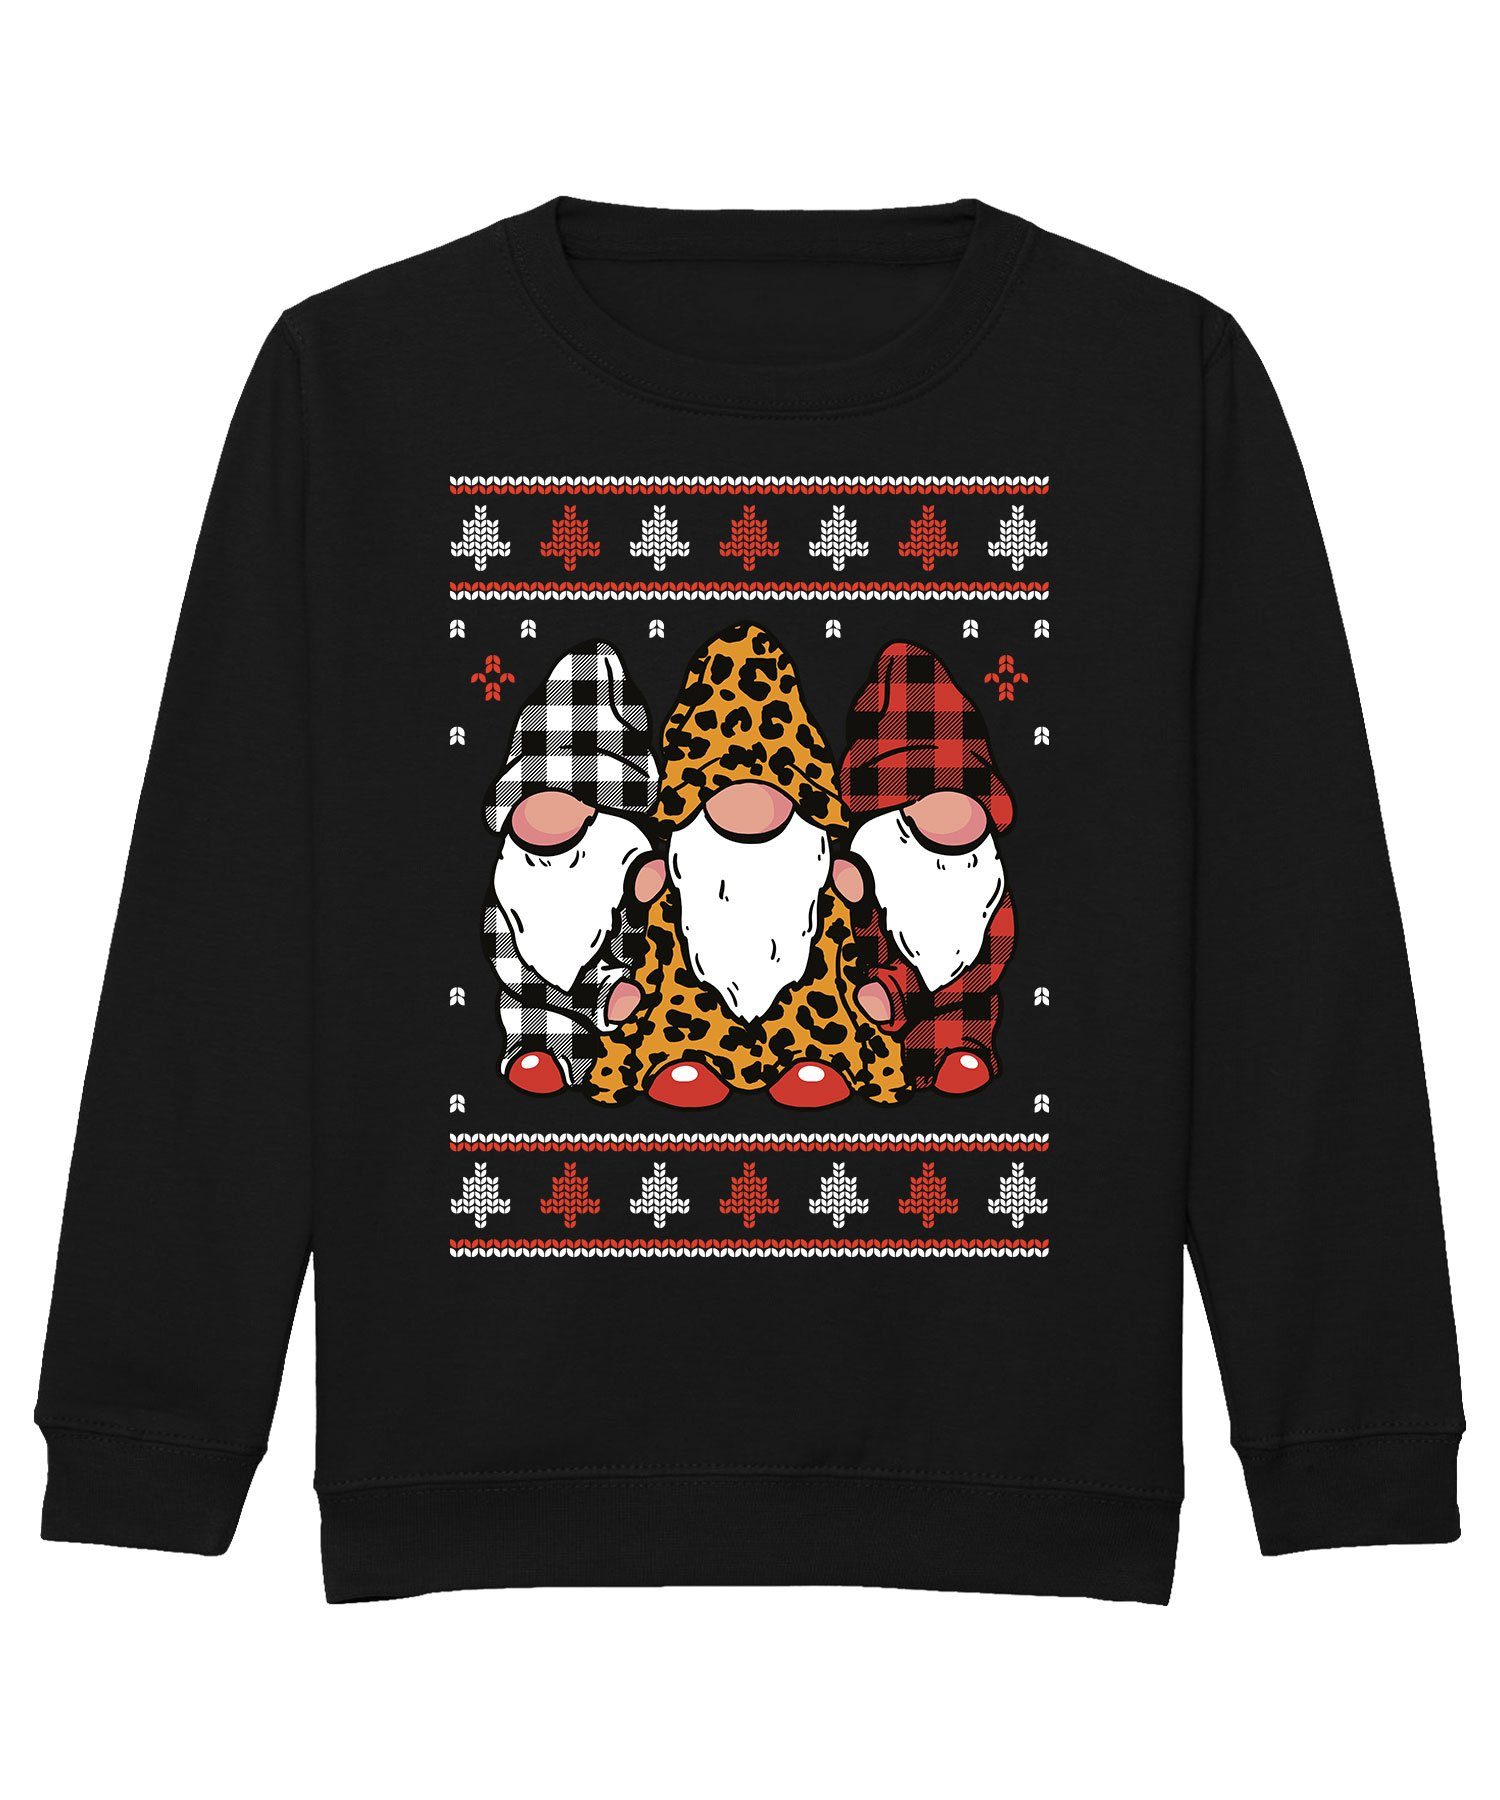 (1-tlg) Quattro Wichtel Weihnachten Formatee Sweat Sweatshirt Ugly Kinder Pullover Kariert Gnome Christmas